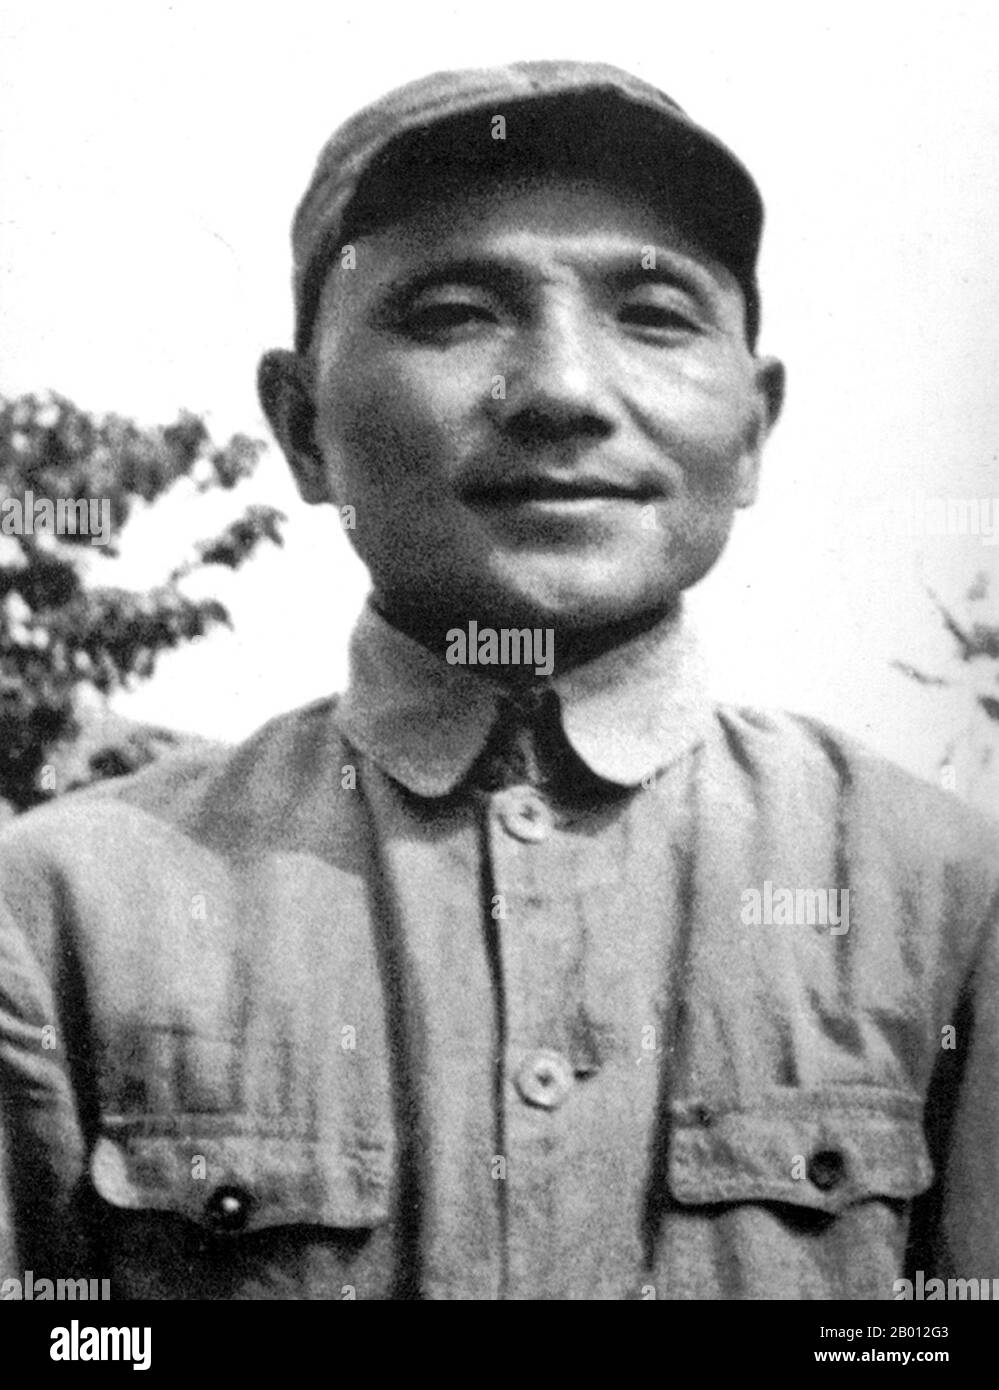 Chine : Deng Xiaoping (Teng Hsiao-p'ing, 1904-1997) dans Ya'an (Yenan) c. 1936. Deng Xiaoping (Teng Hsiao-p'ing; 22 août 1904 – 19 février 1997) était un homme politique, un homme d'État, un théoricien et un diplomate chinois. En tant que dirigeant du Parti communiste chinois, Deng était un réformateur qui menait la Chine vers une économie de marché. Bien que Deng n'ait jamais occupé le poste de chef d'État, de chef de gouvernement ou de secrétaire général du Parti communiste de Chine (historiquement la plus haute position de la Chine communiste), il a néanmoins été le leader suprême de la République populaire de Chine de 1978 à 1992. Banque D'Images